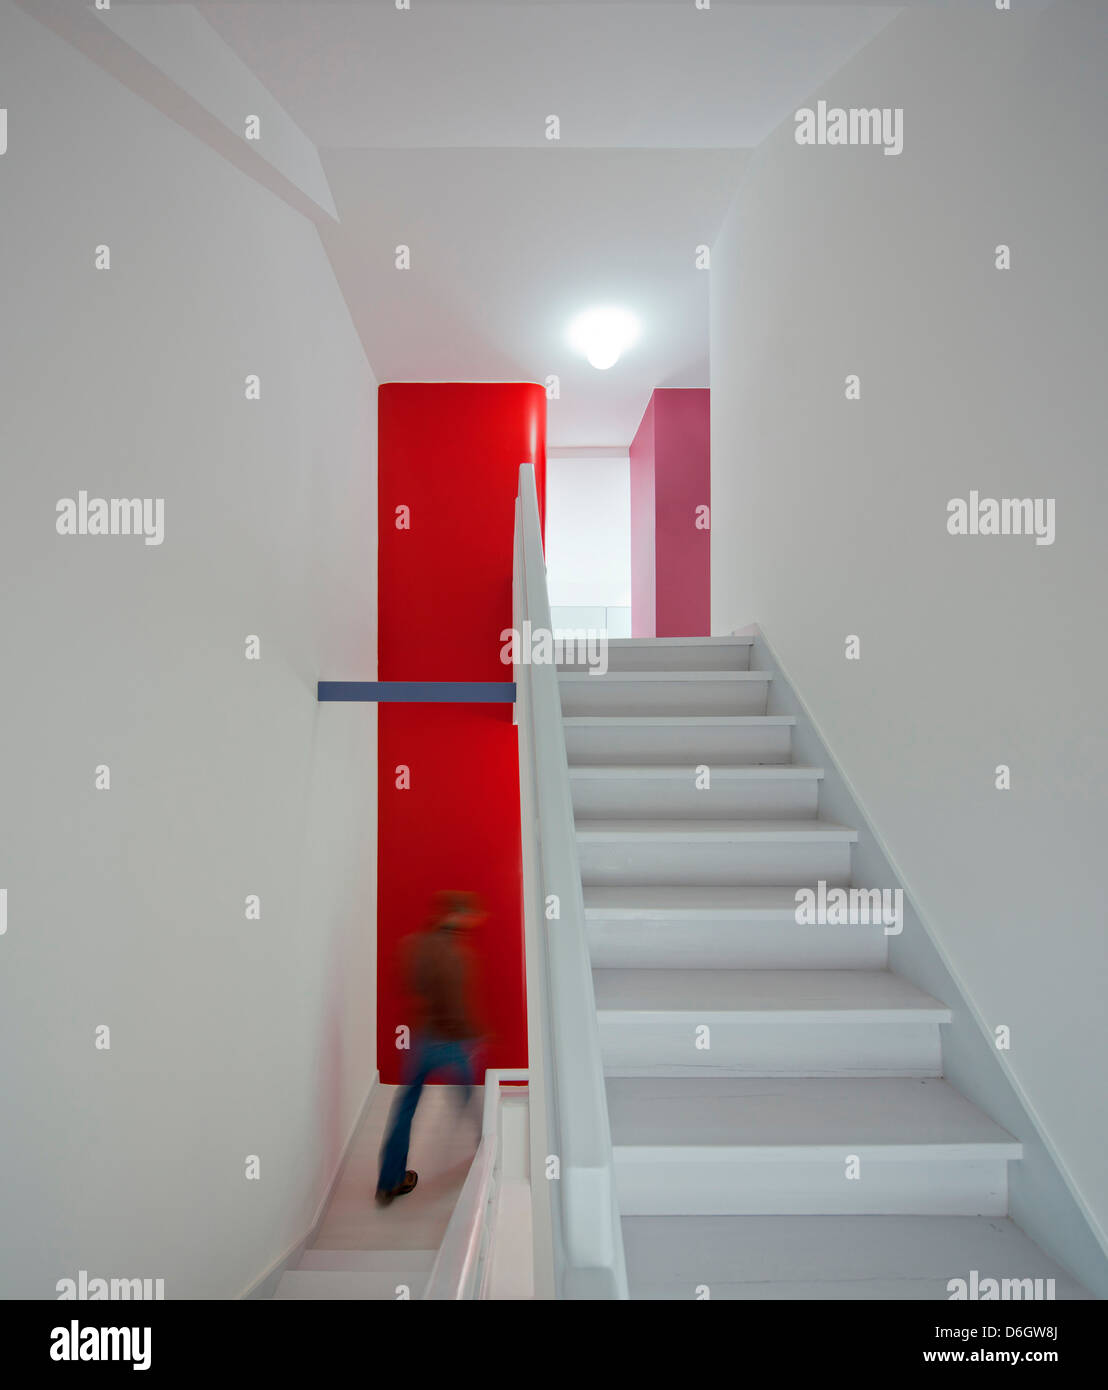 Casa Em Almada, Almada, Portugal. Architekt: Pedro Gadanho, 2012. Innen Treppe mit roten Schränken darüber hinaus. Stockfoto